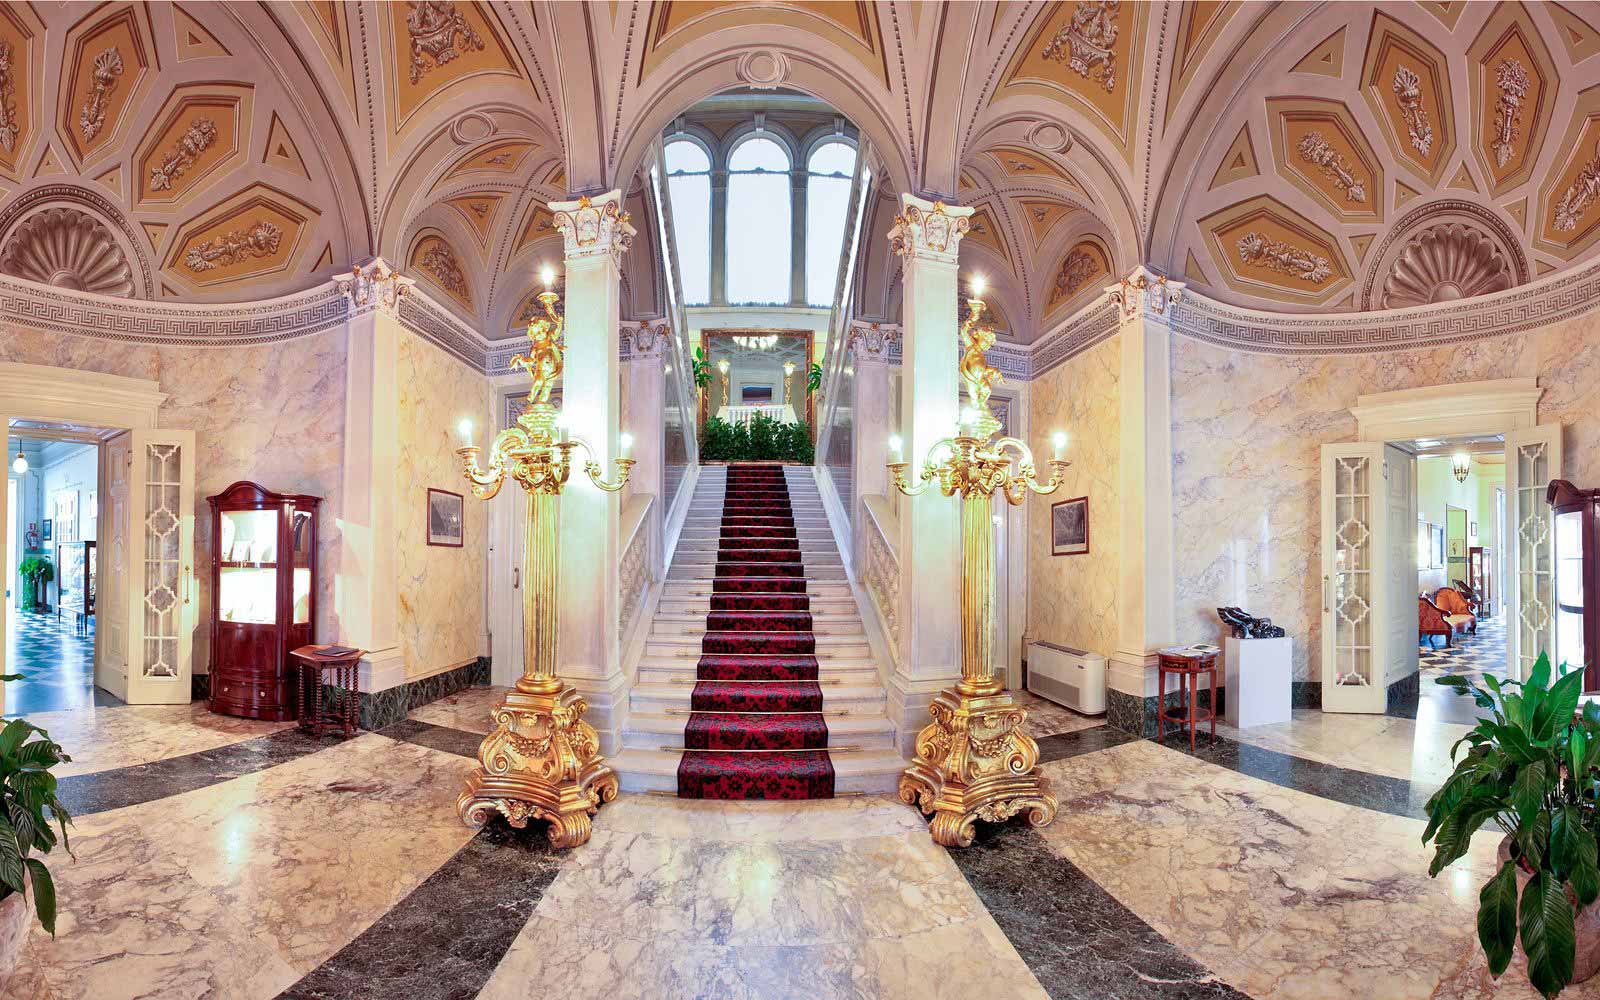 Reception hall at Grand Hotel Villa Serbelloni